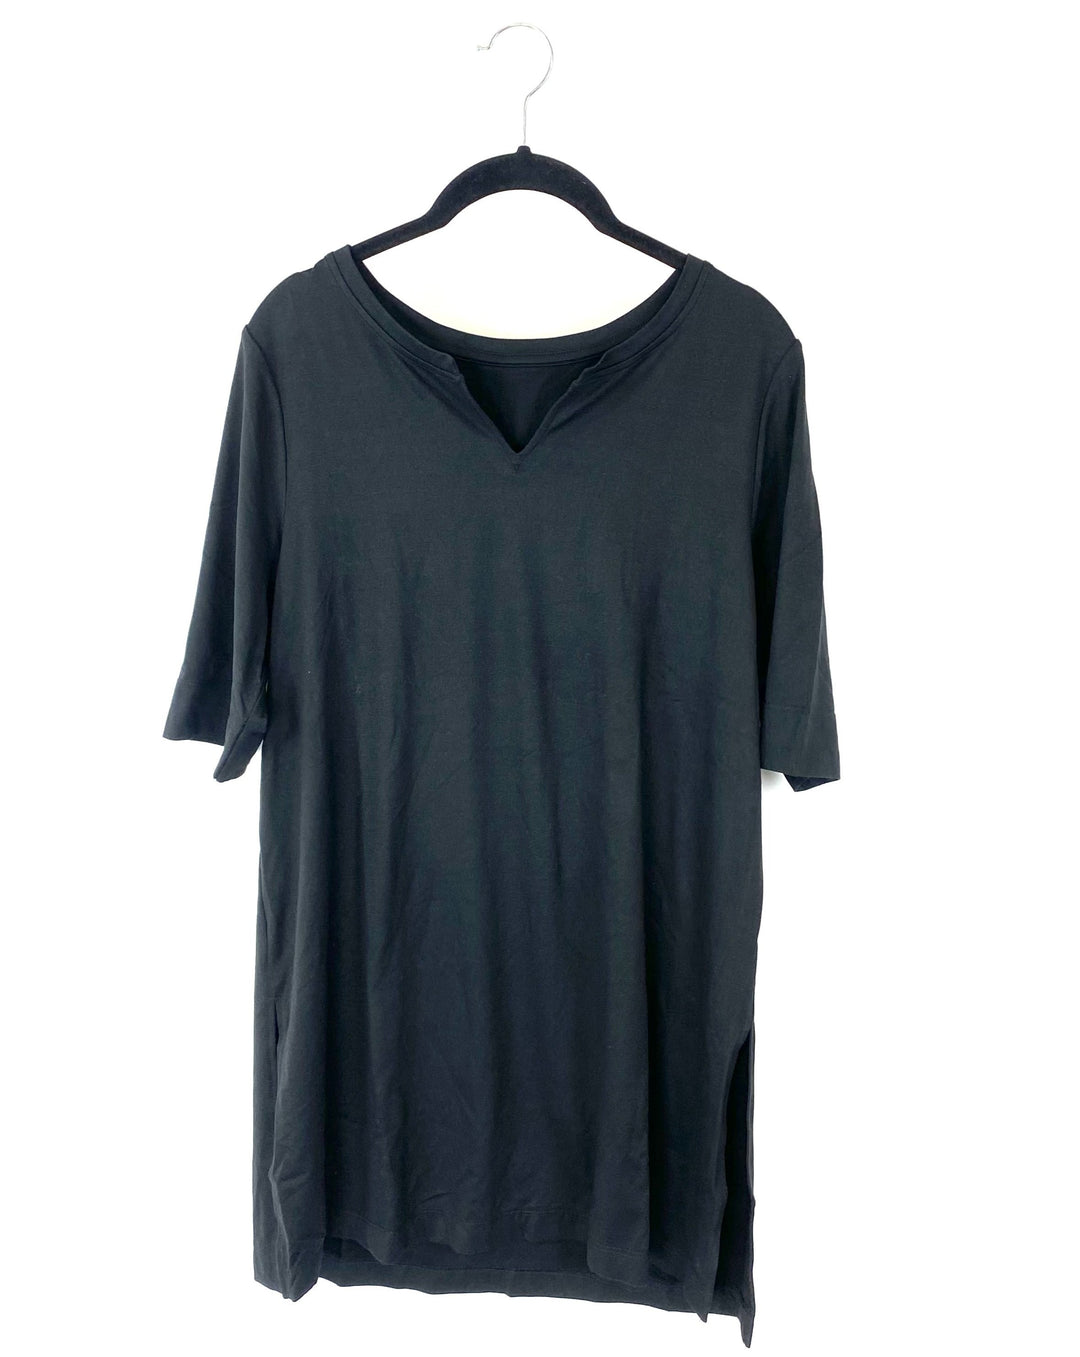 Black Short Sleeve Top - Small/Medium